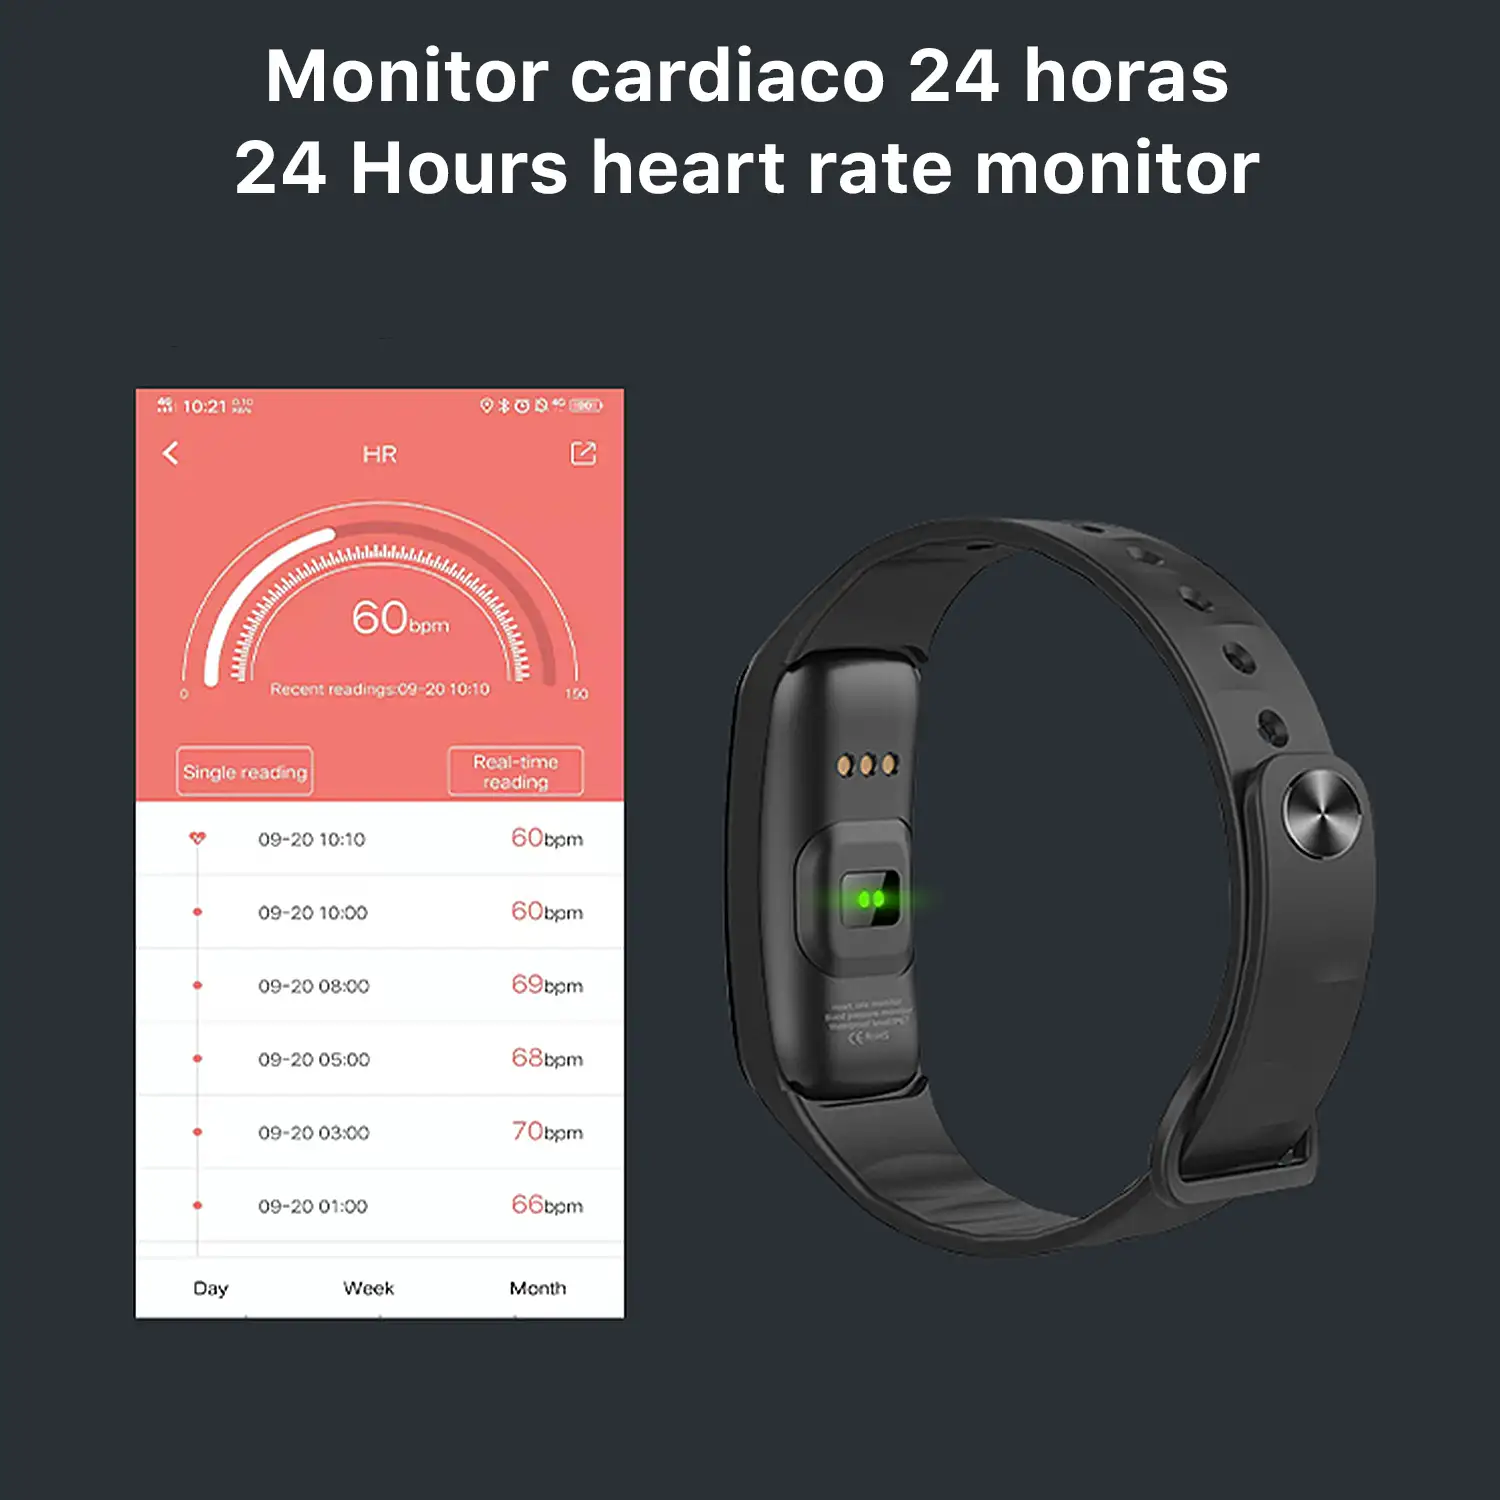 Brazalete inteligente B1 con monitor de fatiga, tensión y O2 en sangre. Varios modos deportivos, notificaciones de apps.